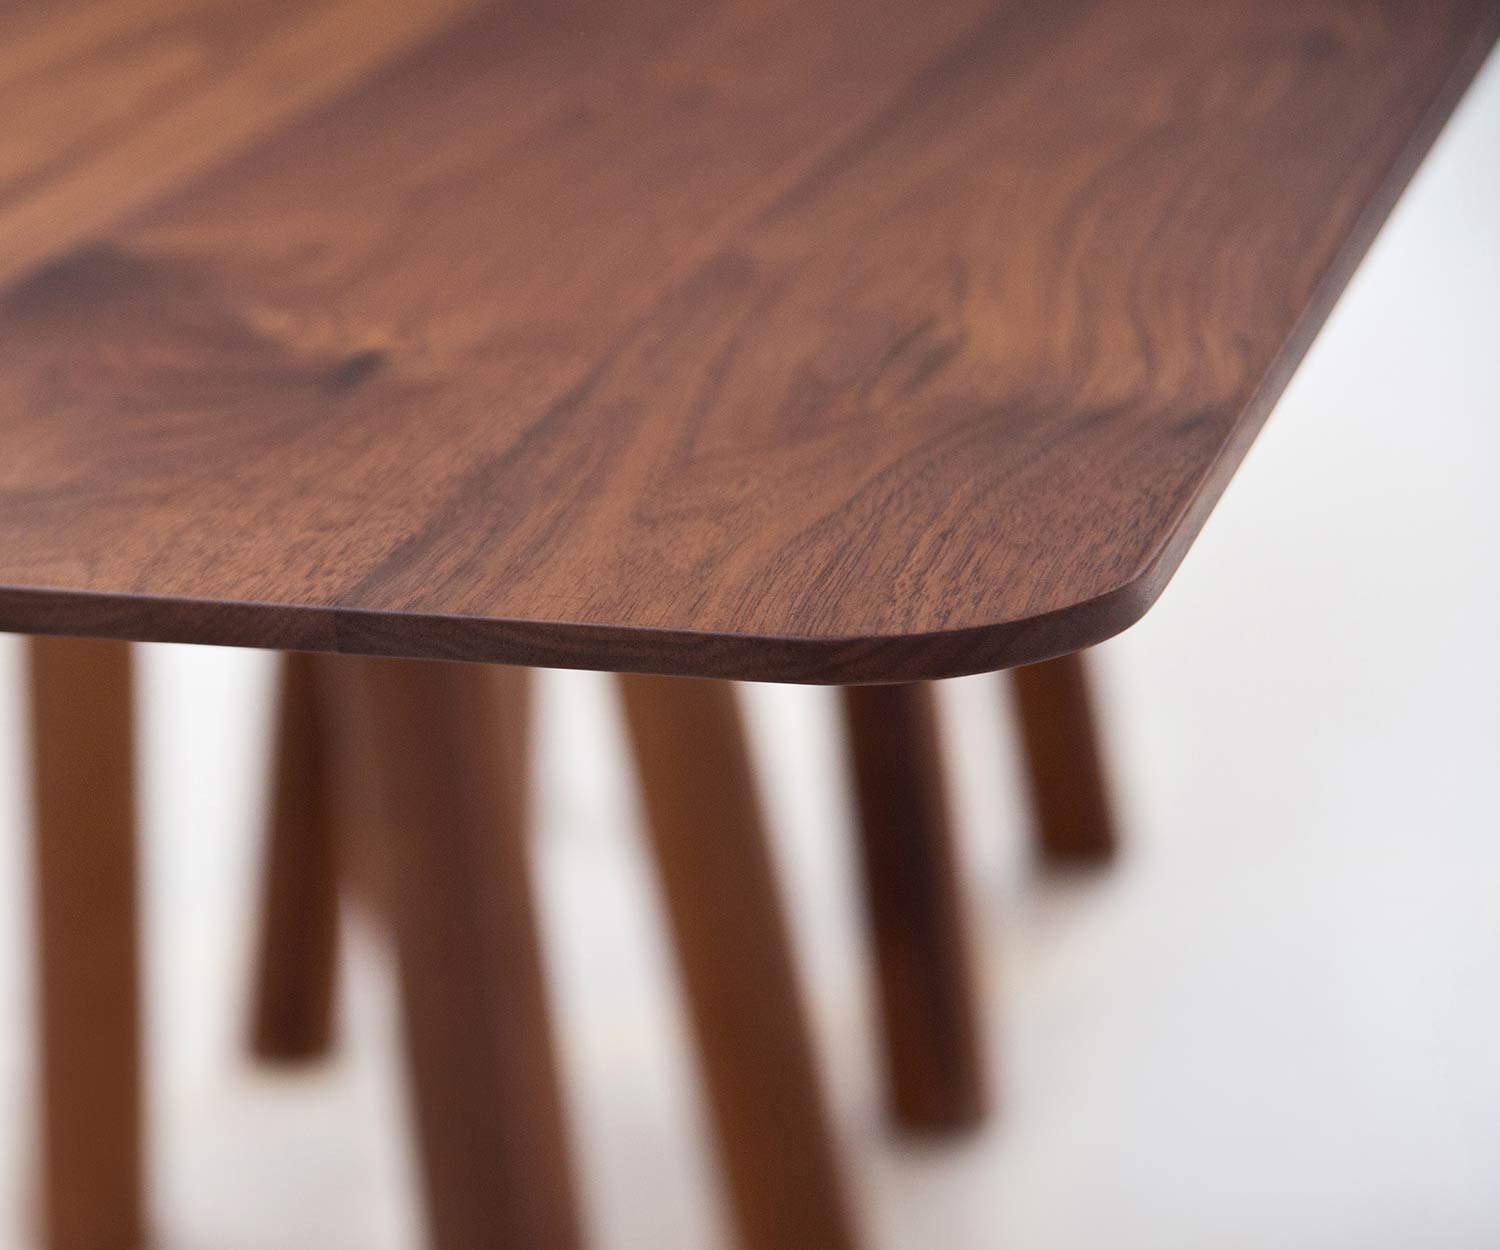 Design eettafel detail concaaf afgeronde hoeken walnoot tafelblad massief hout